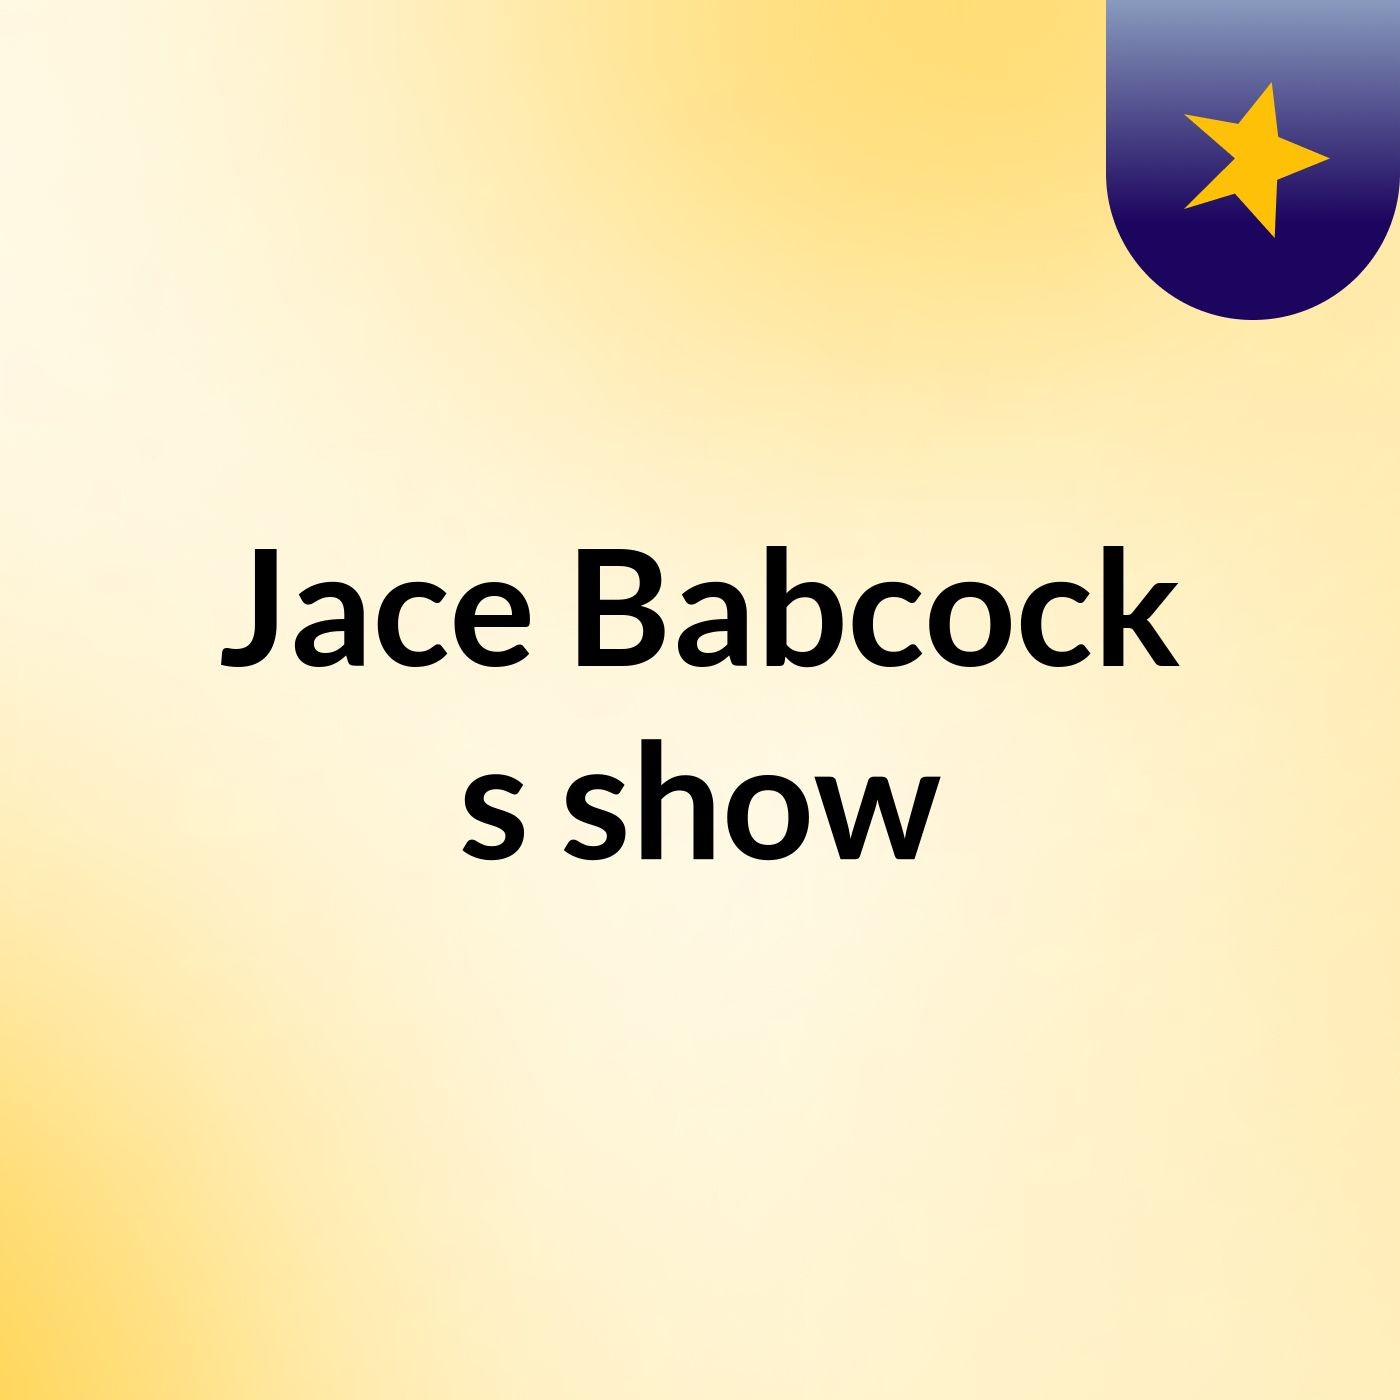 Jace Babcock's show